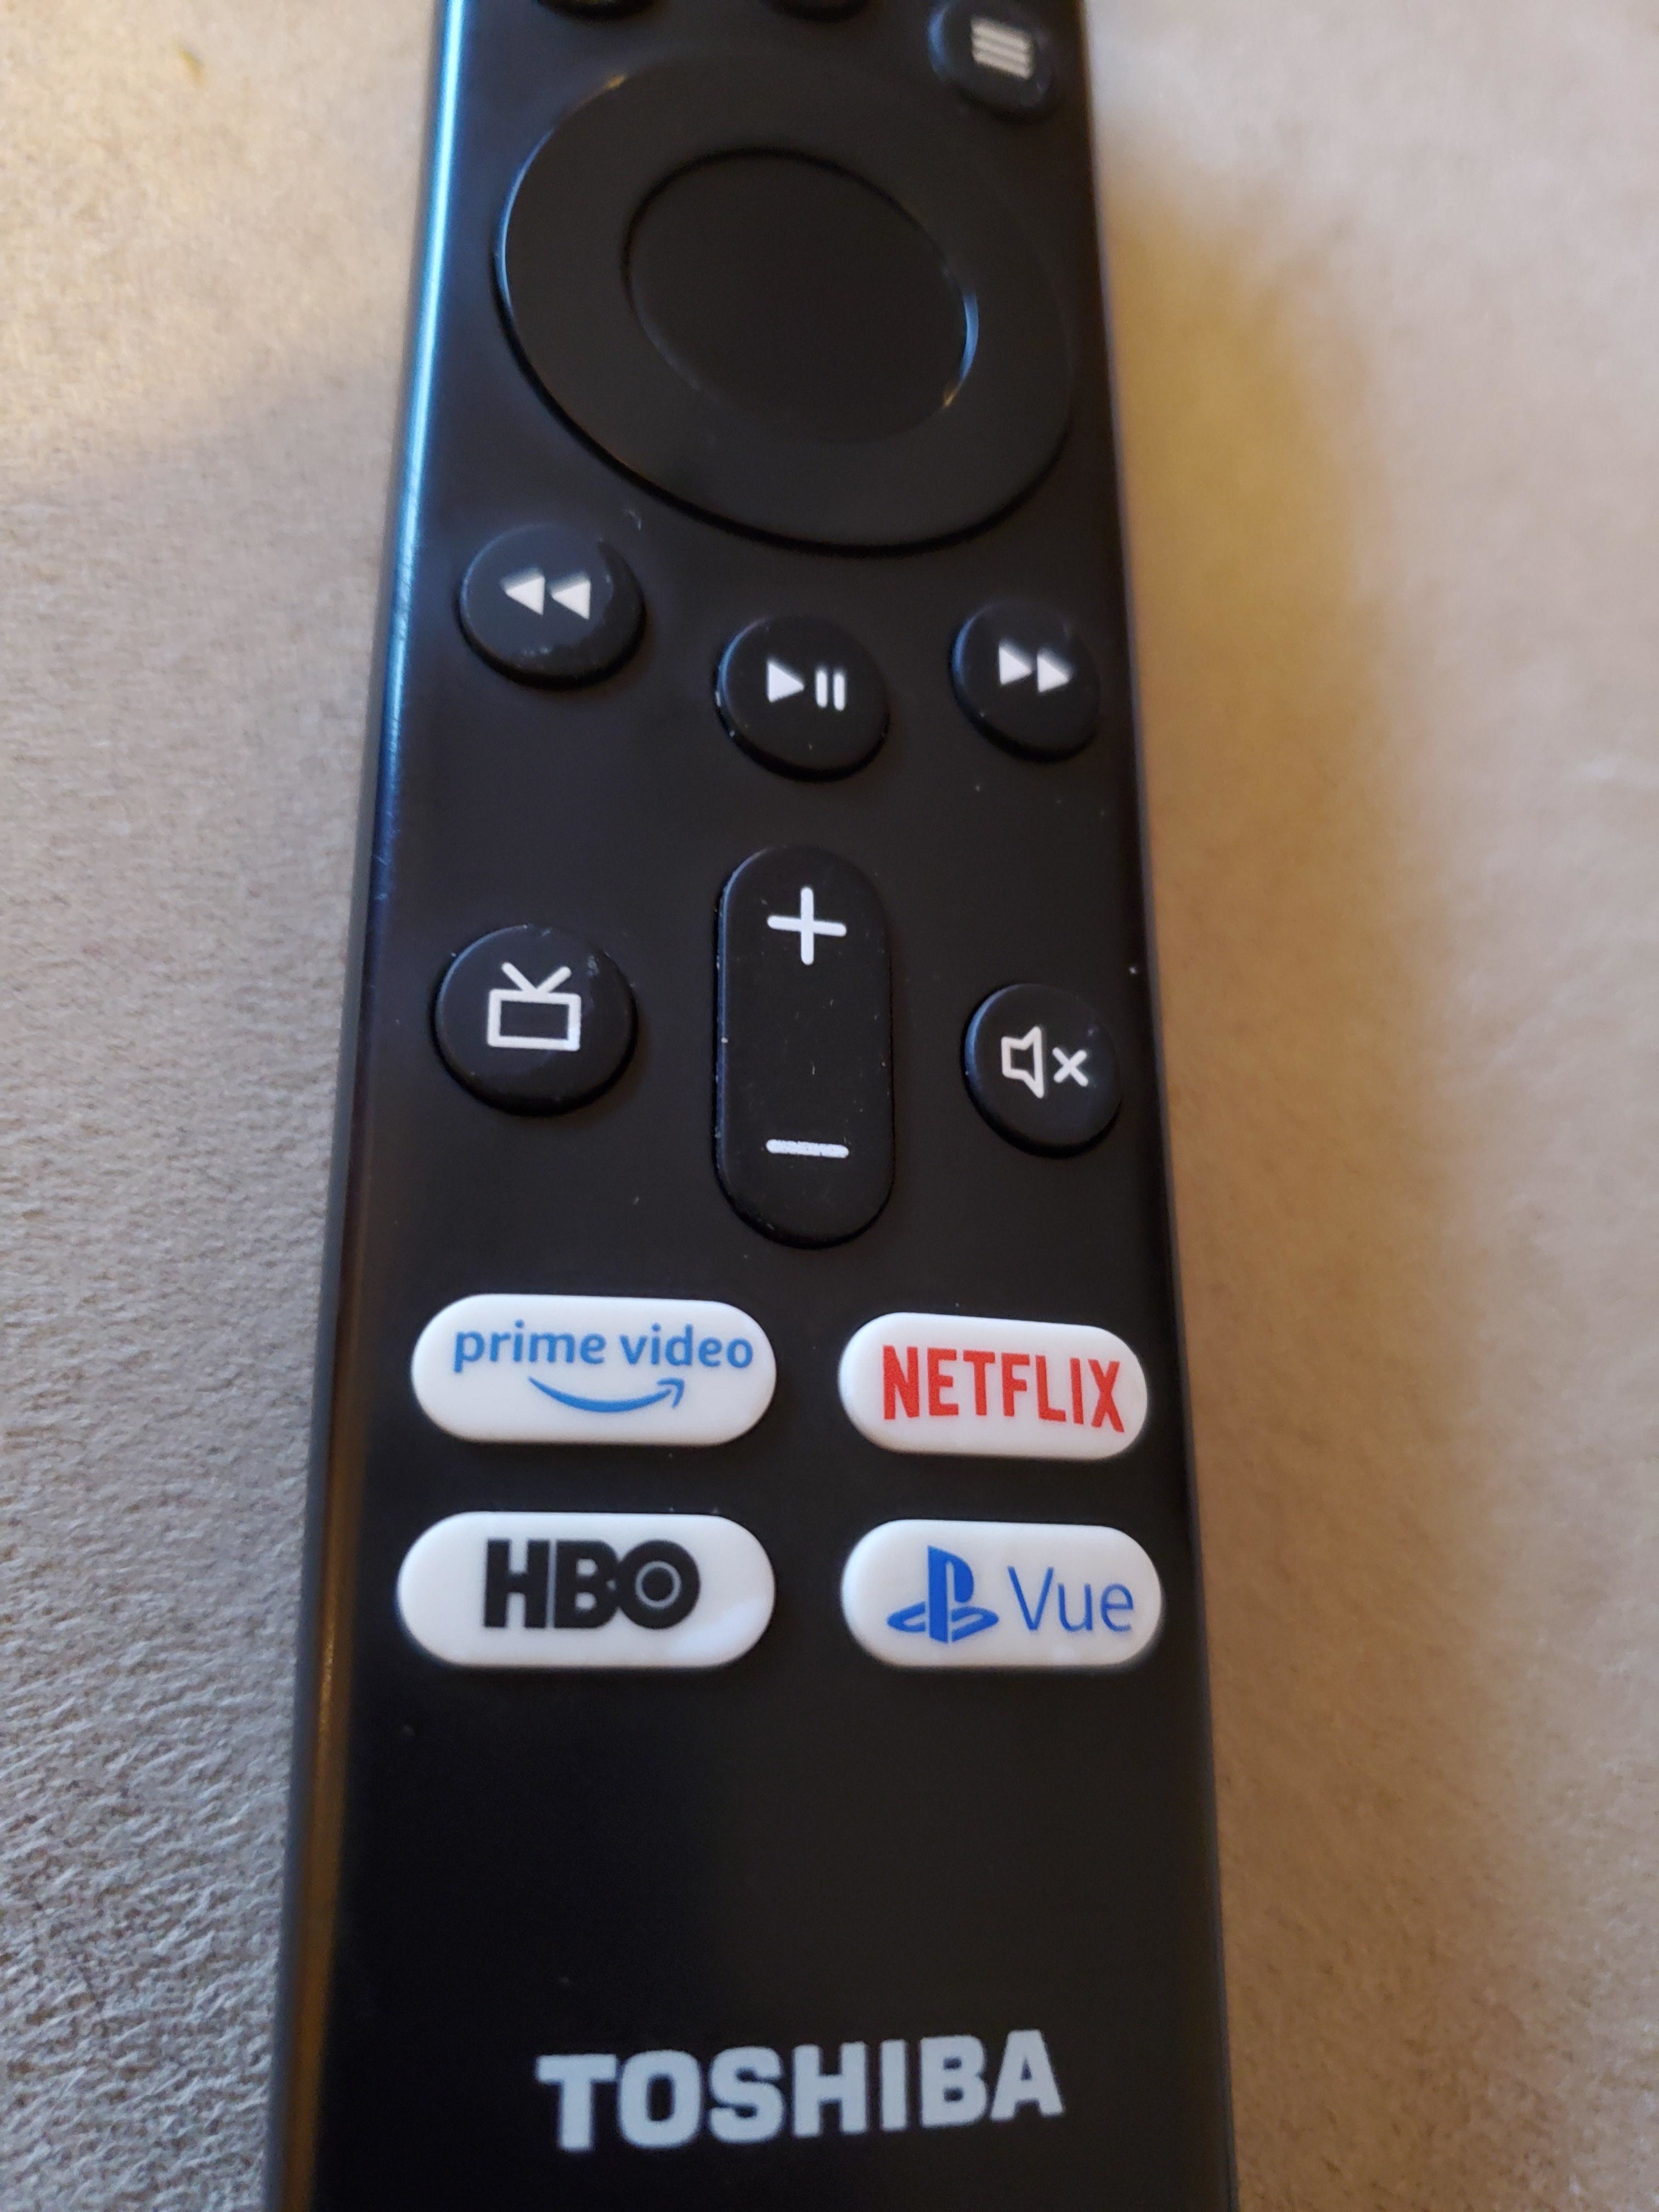 A TV remote